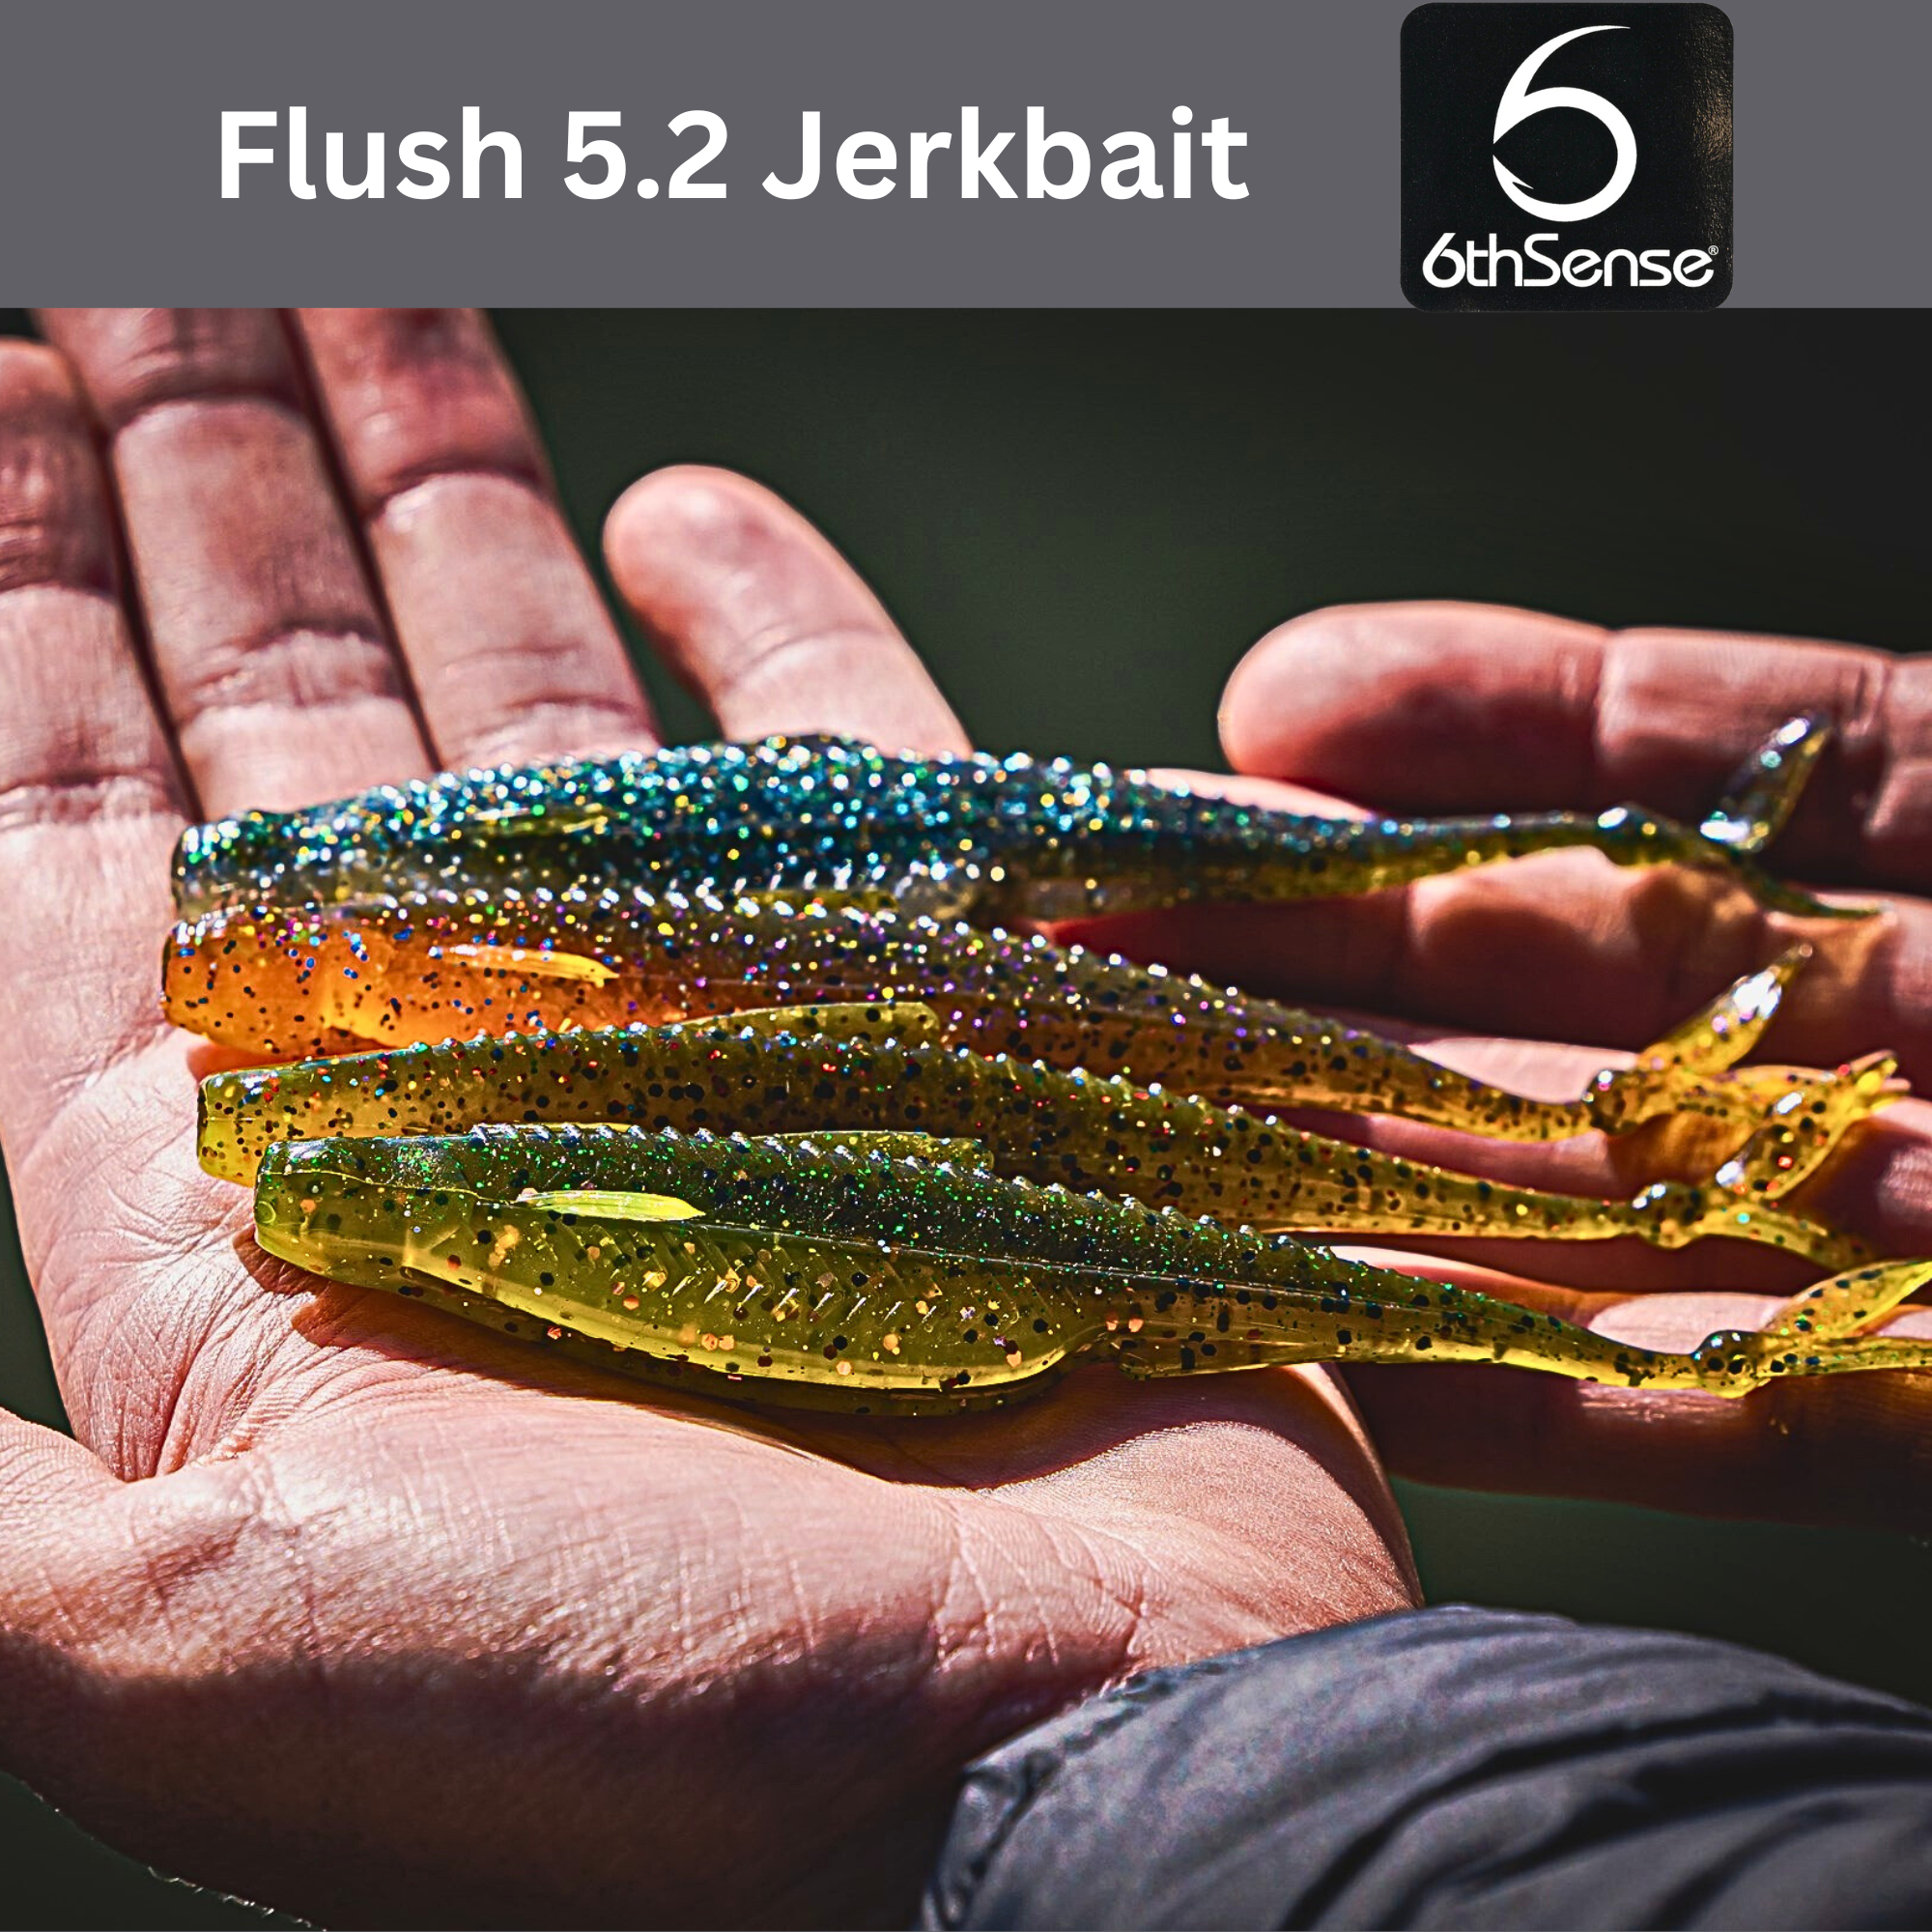 Flush 5.2 Jerkbait, 6th Sense Fishing, Lures, Fishing Store